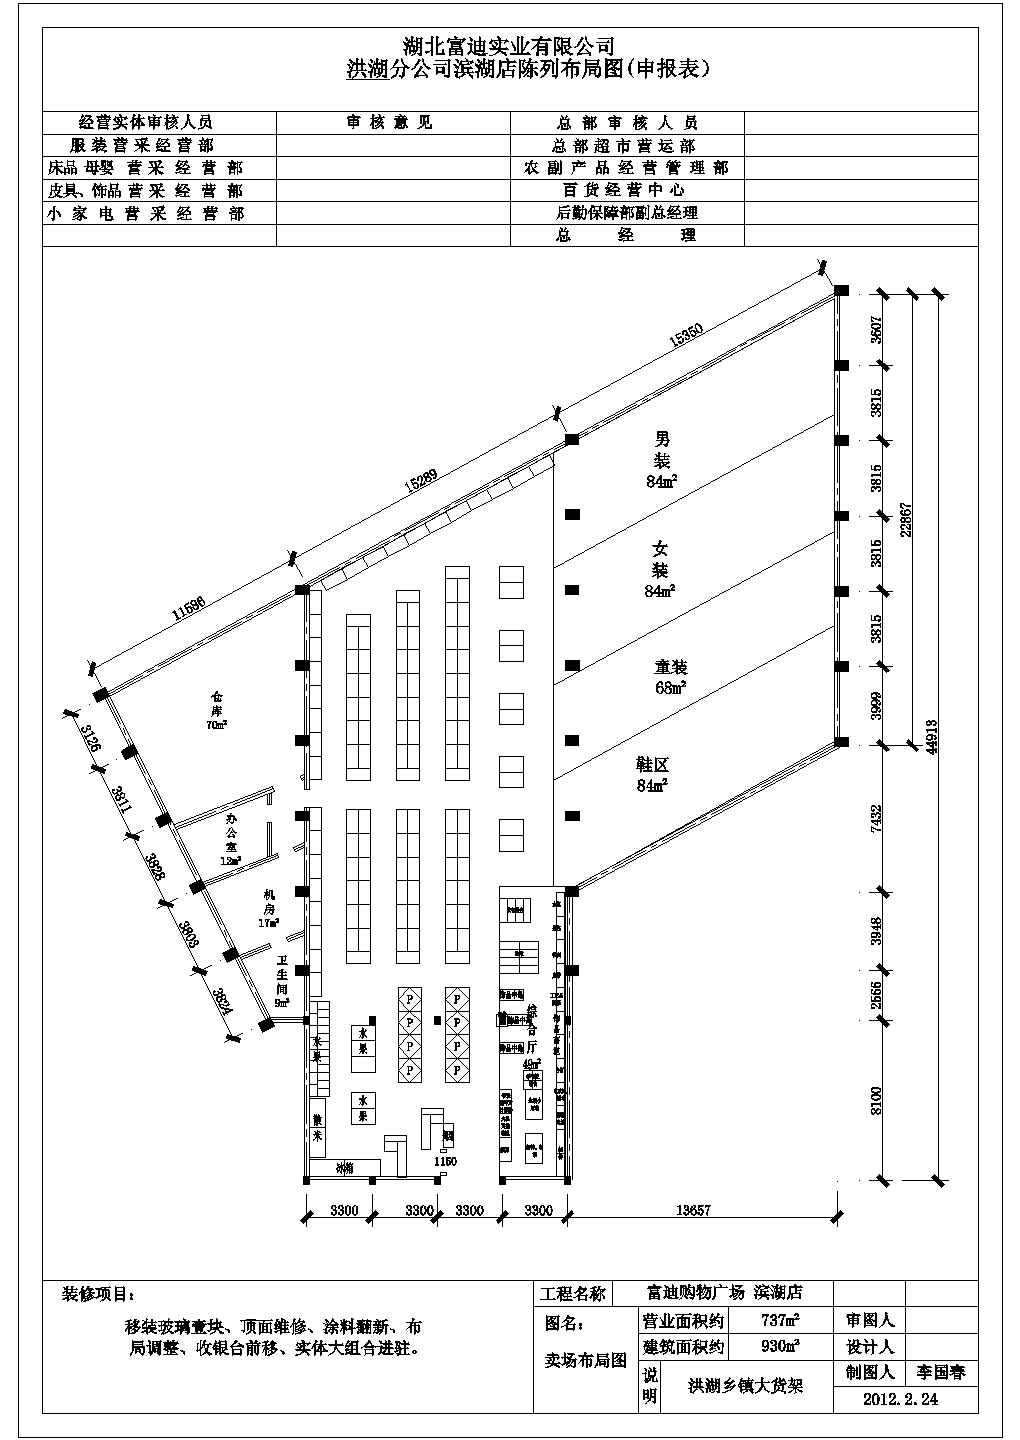 某滨湖购物中心大型超市CAD建筑设计施工图